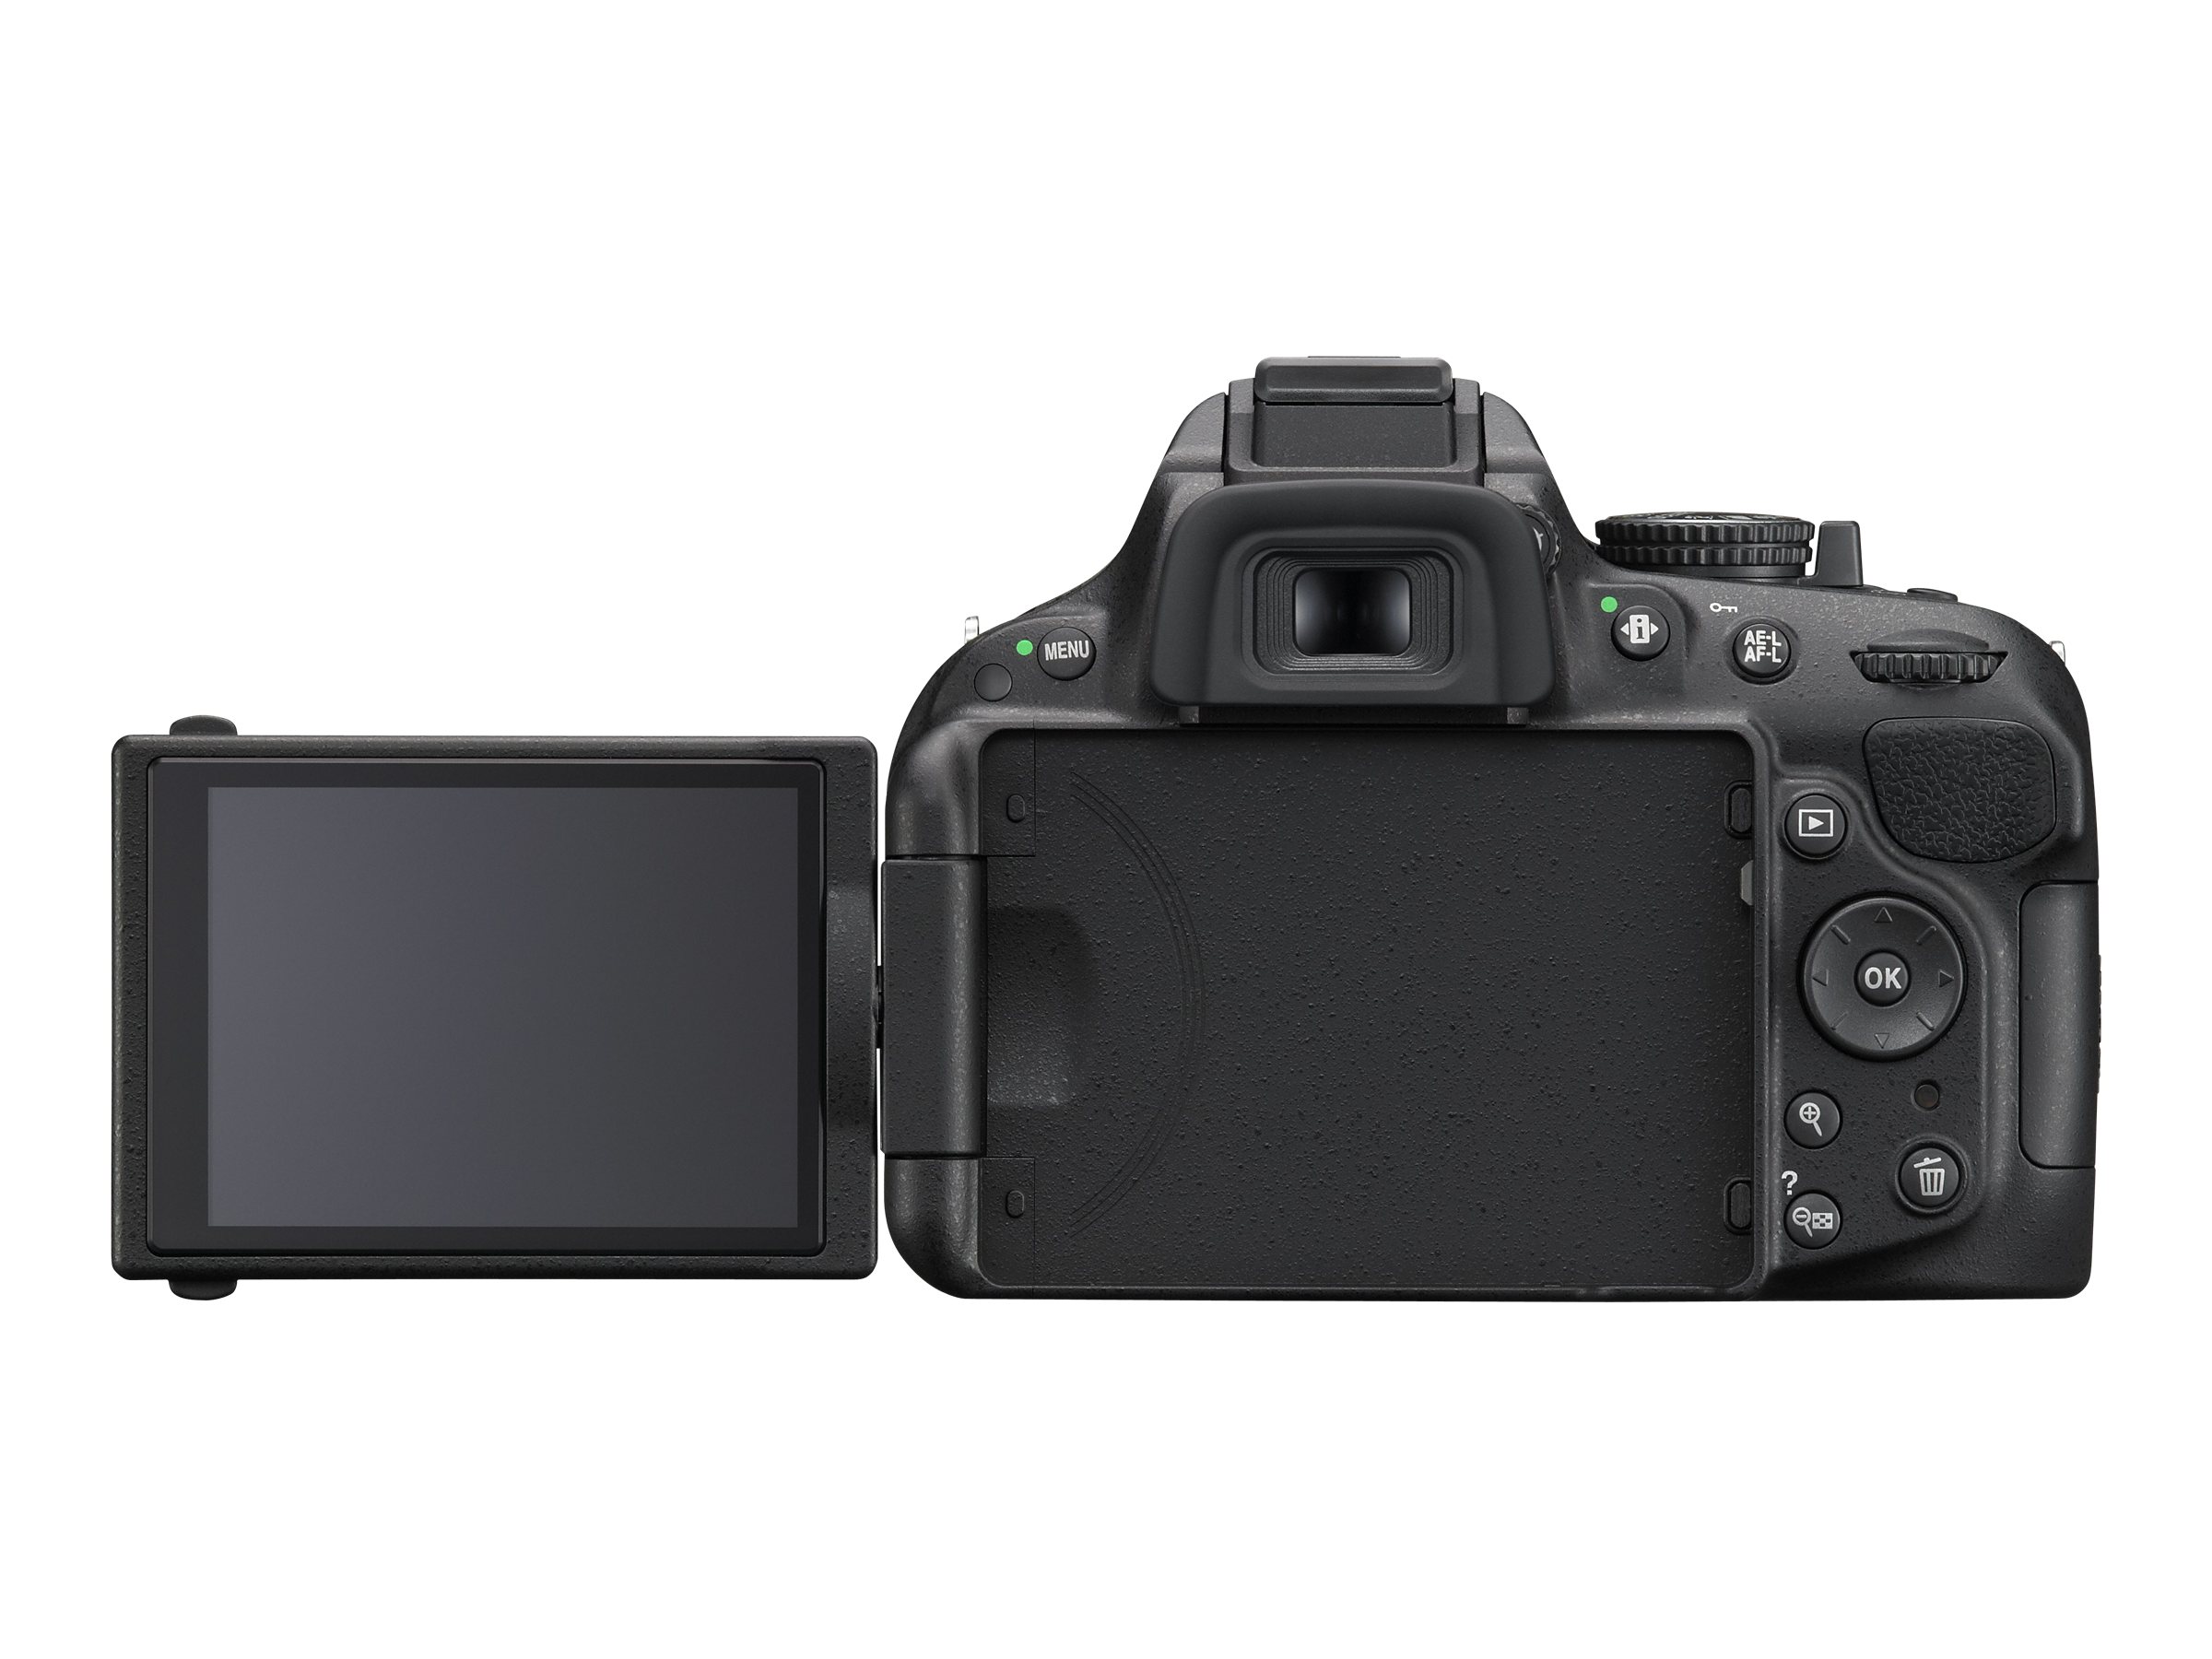 Nikon D5200/D5600 DSLR Camera with Nikon 18-140mm VR DX Lens - image 3 of 5